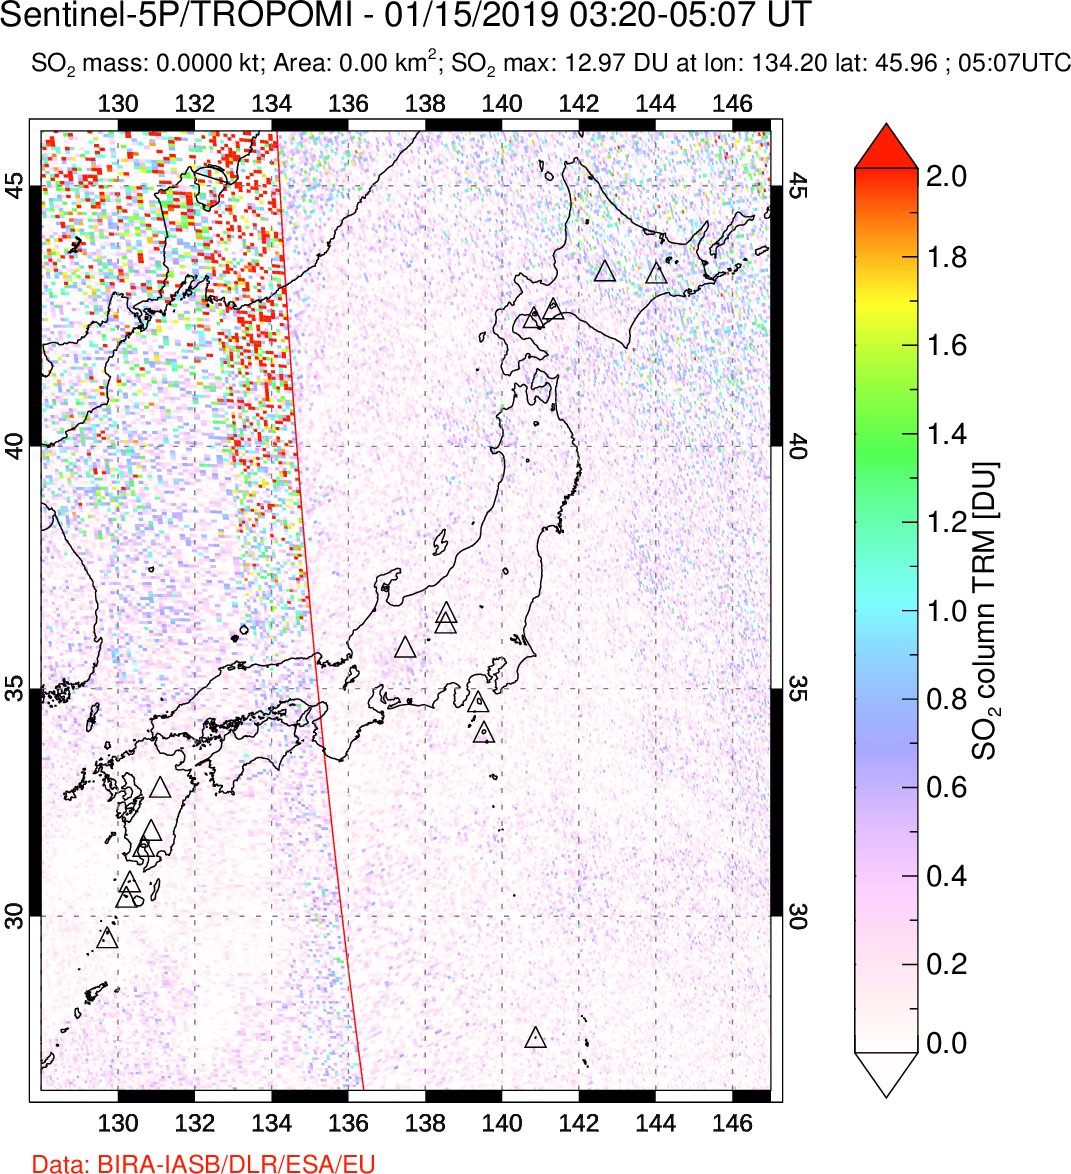 A sulfur dioxide image over Japan on Jan 15, 2019.